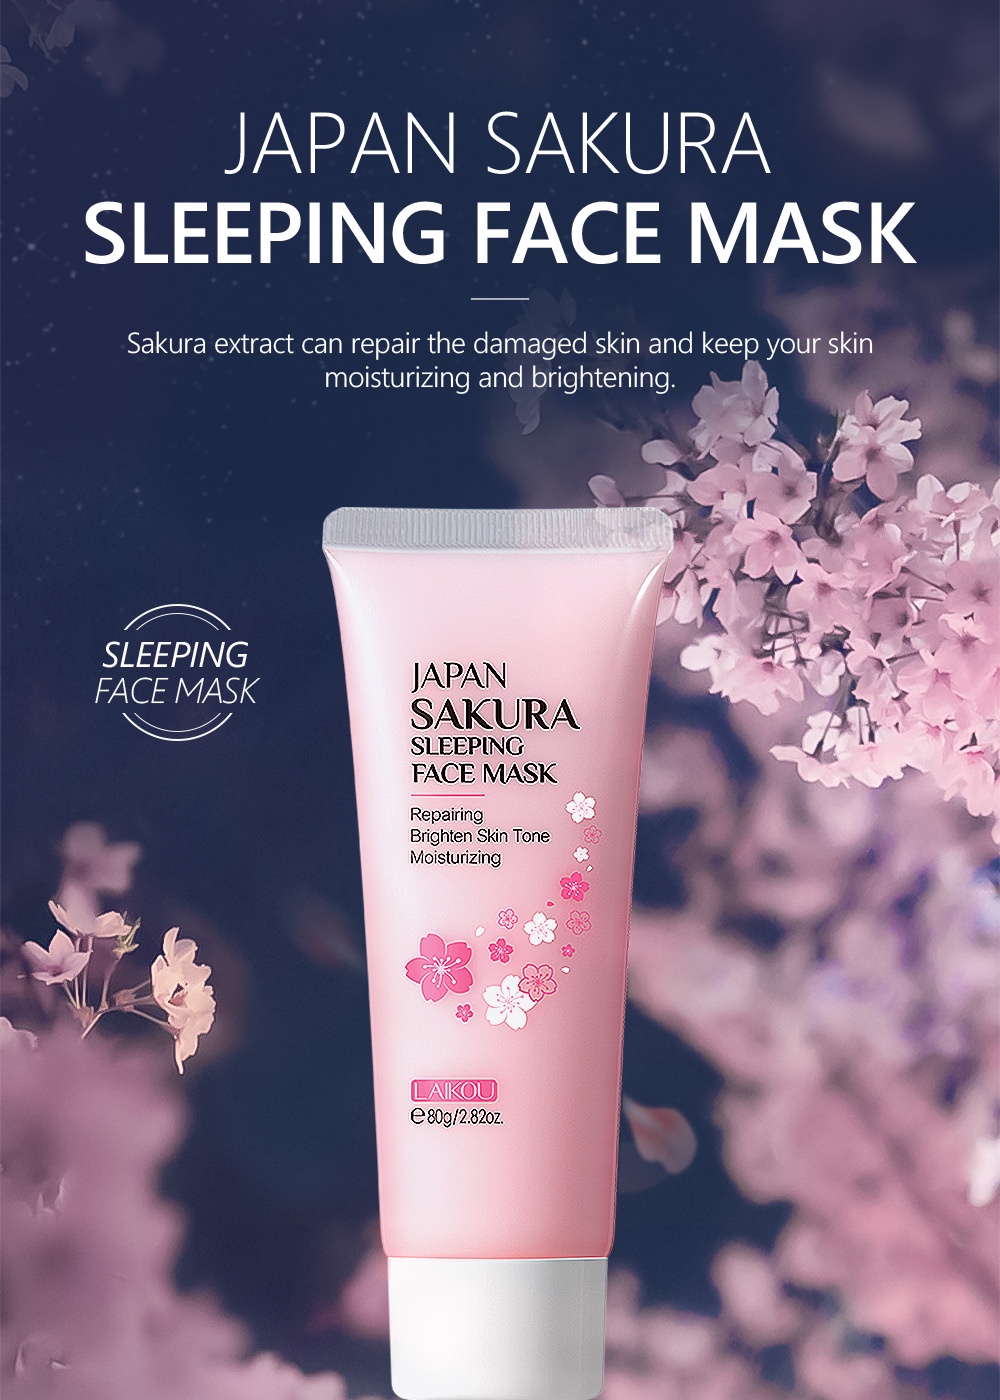 Nourishing LAIKOU Japan Sakura Sleeping Mask 80g - SHOPPE.LK